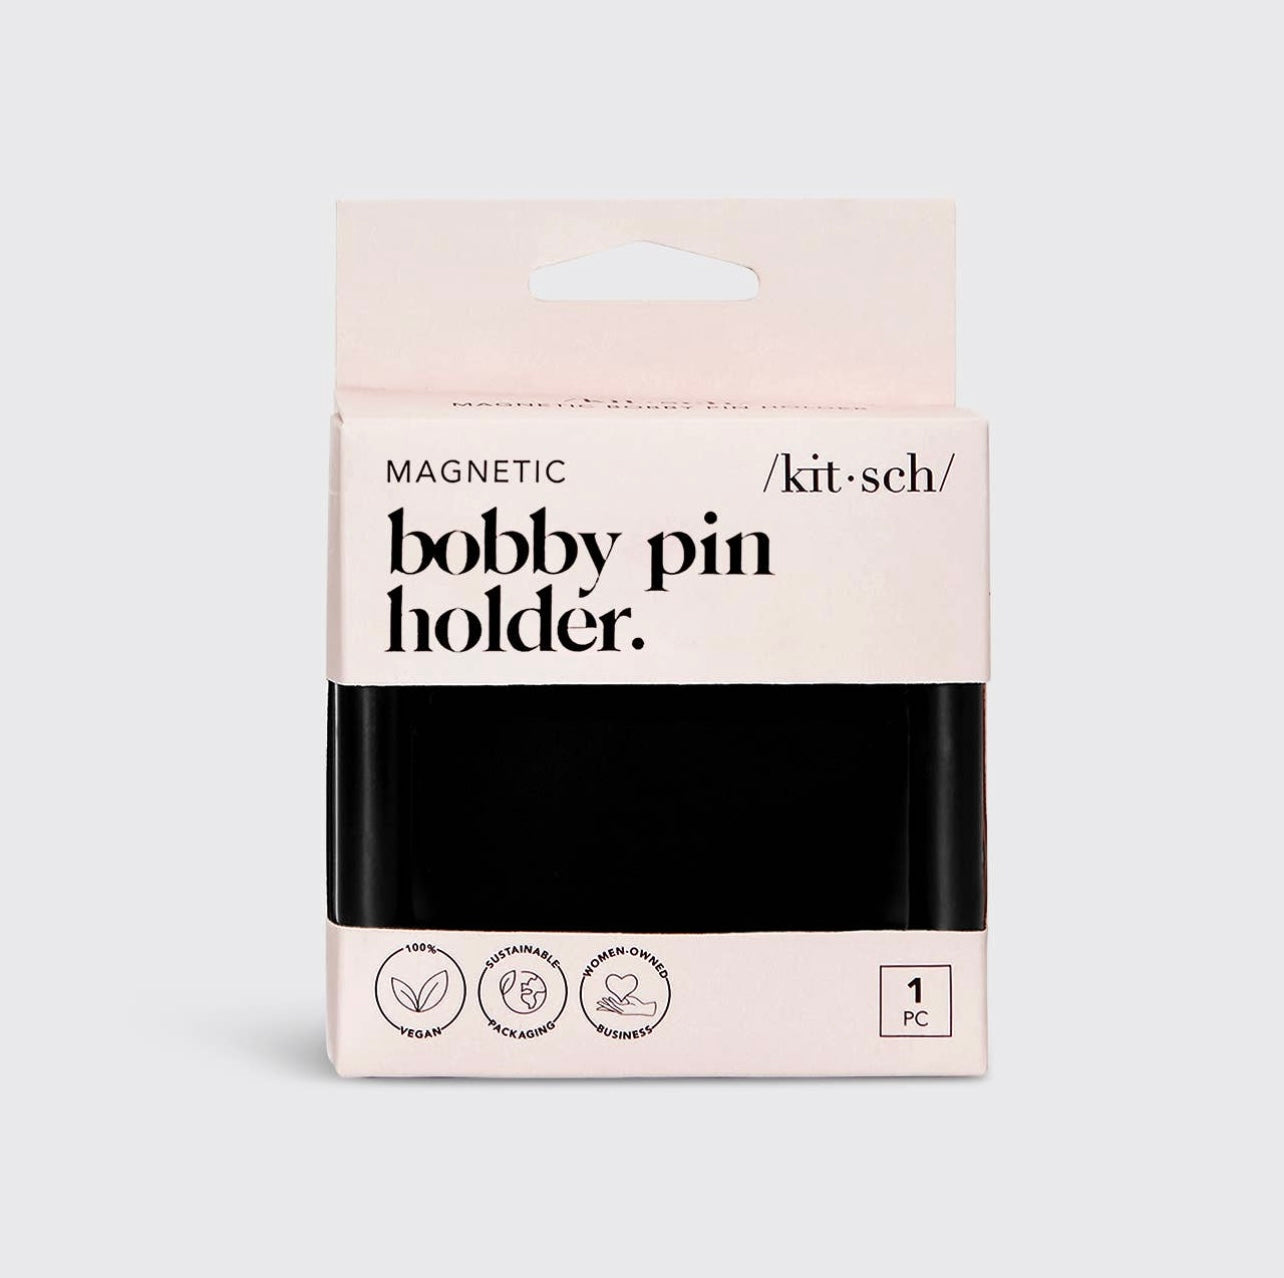 Kitsch Bobby Pin Magnetic Holder